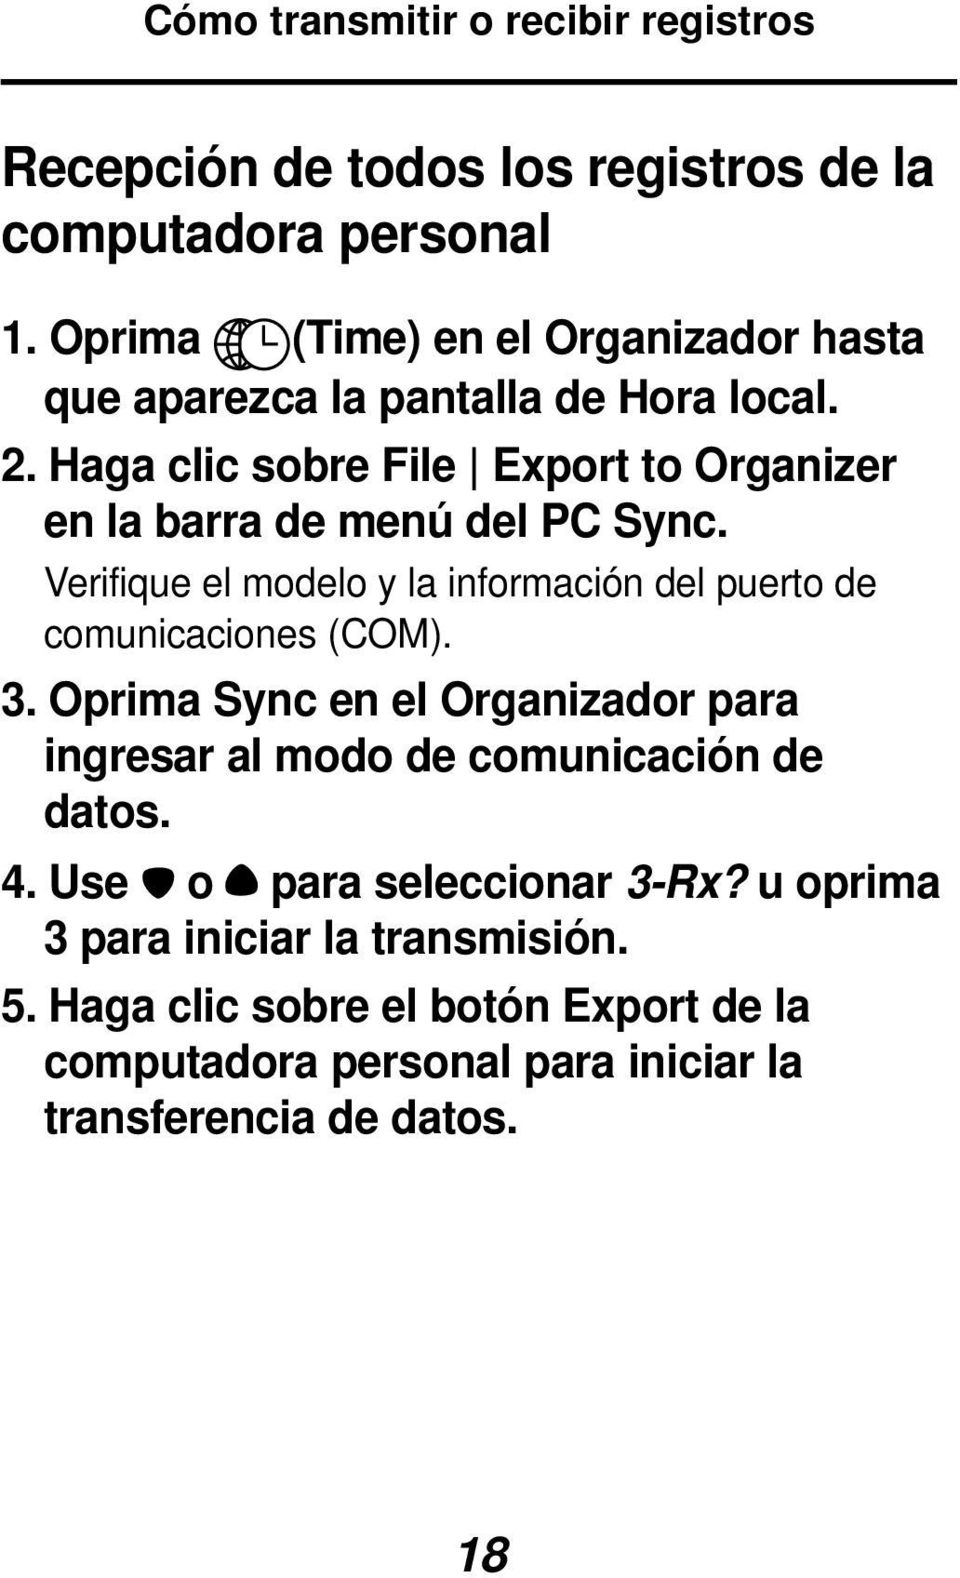 Haga clic sobre File Export to Organizer en la barra de menú del PC Sync. Verifique el modelo y la información del puerto de comunicaciones (COM).